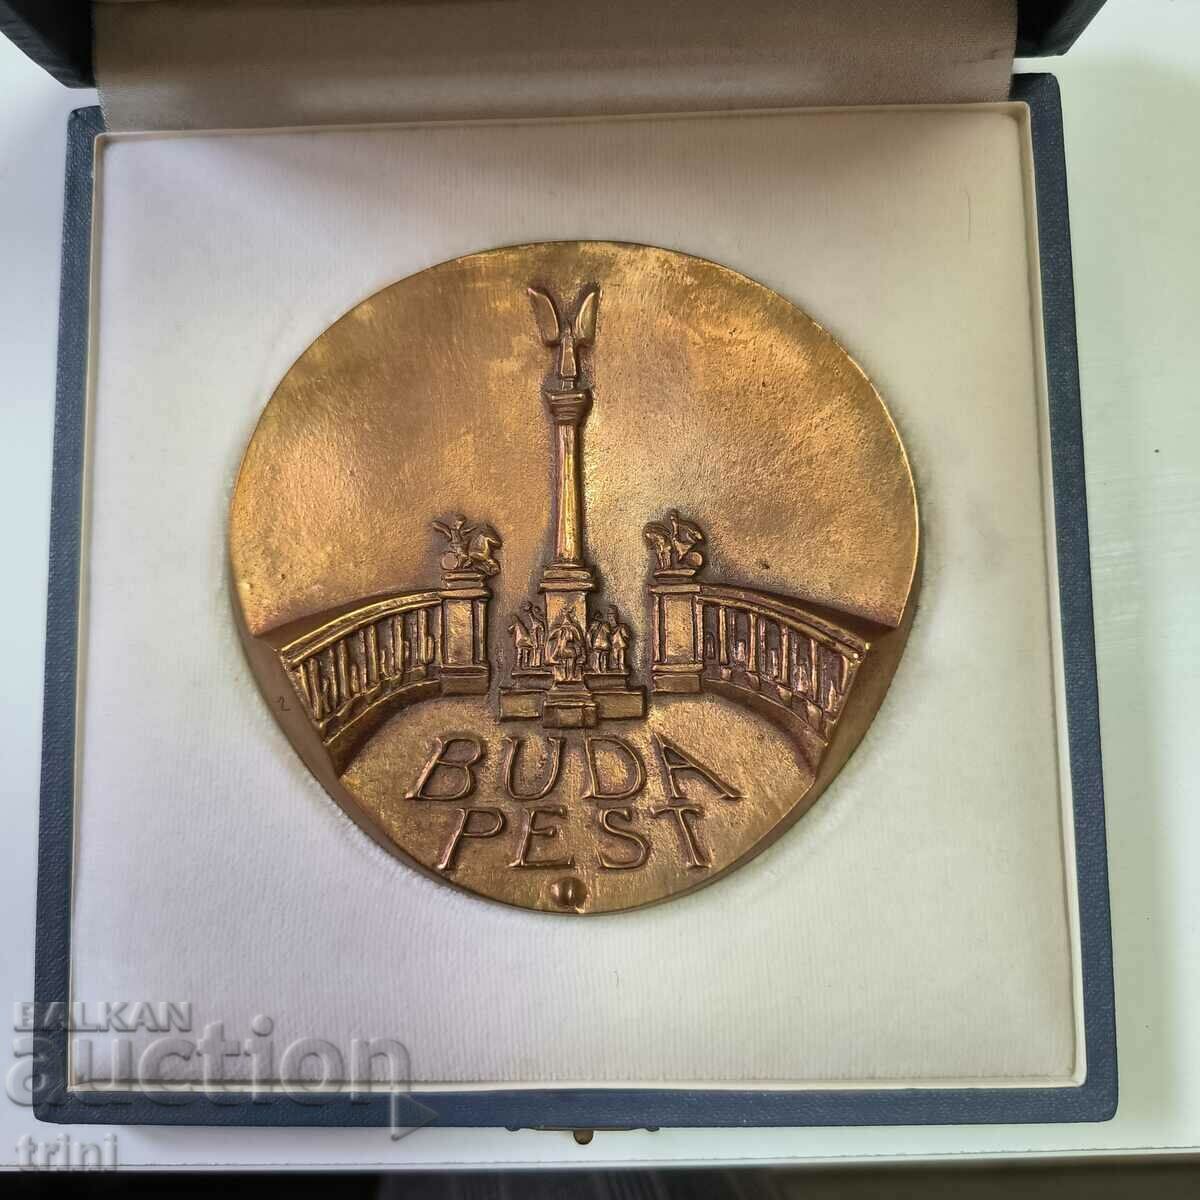 Медал на Столичния съвет на Будапеща - Метрополитен